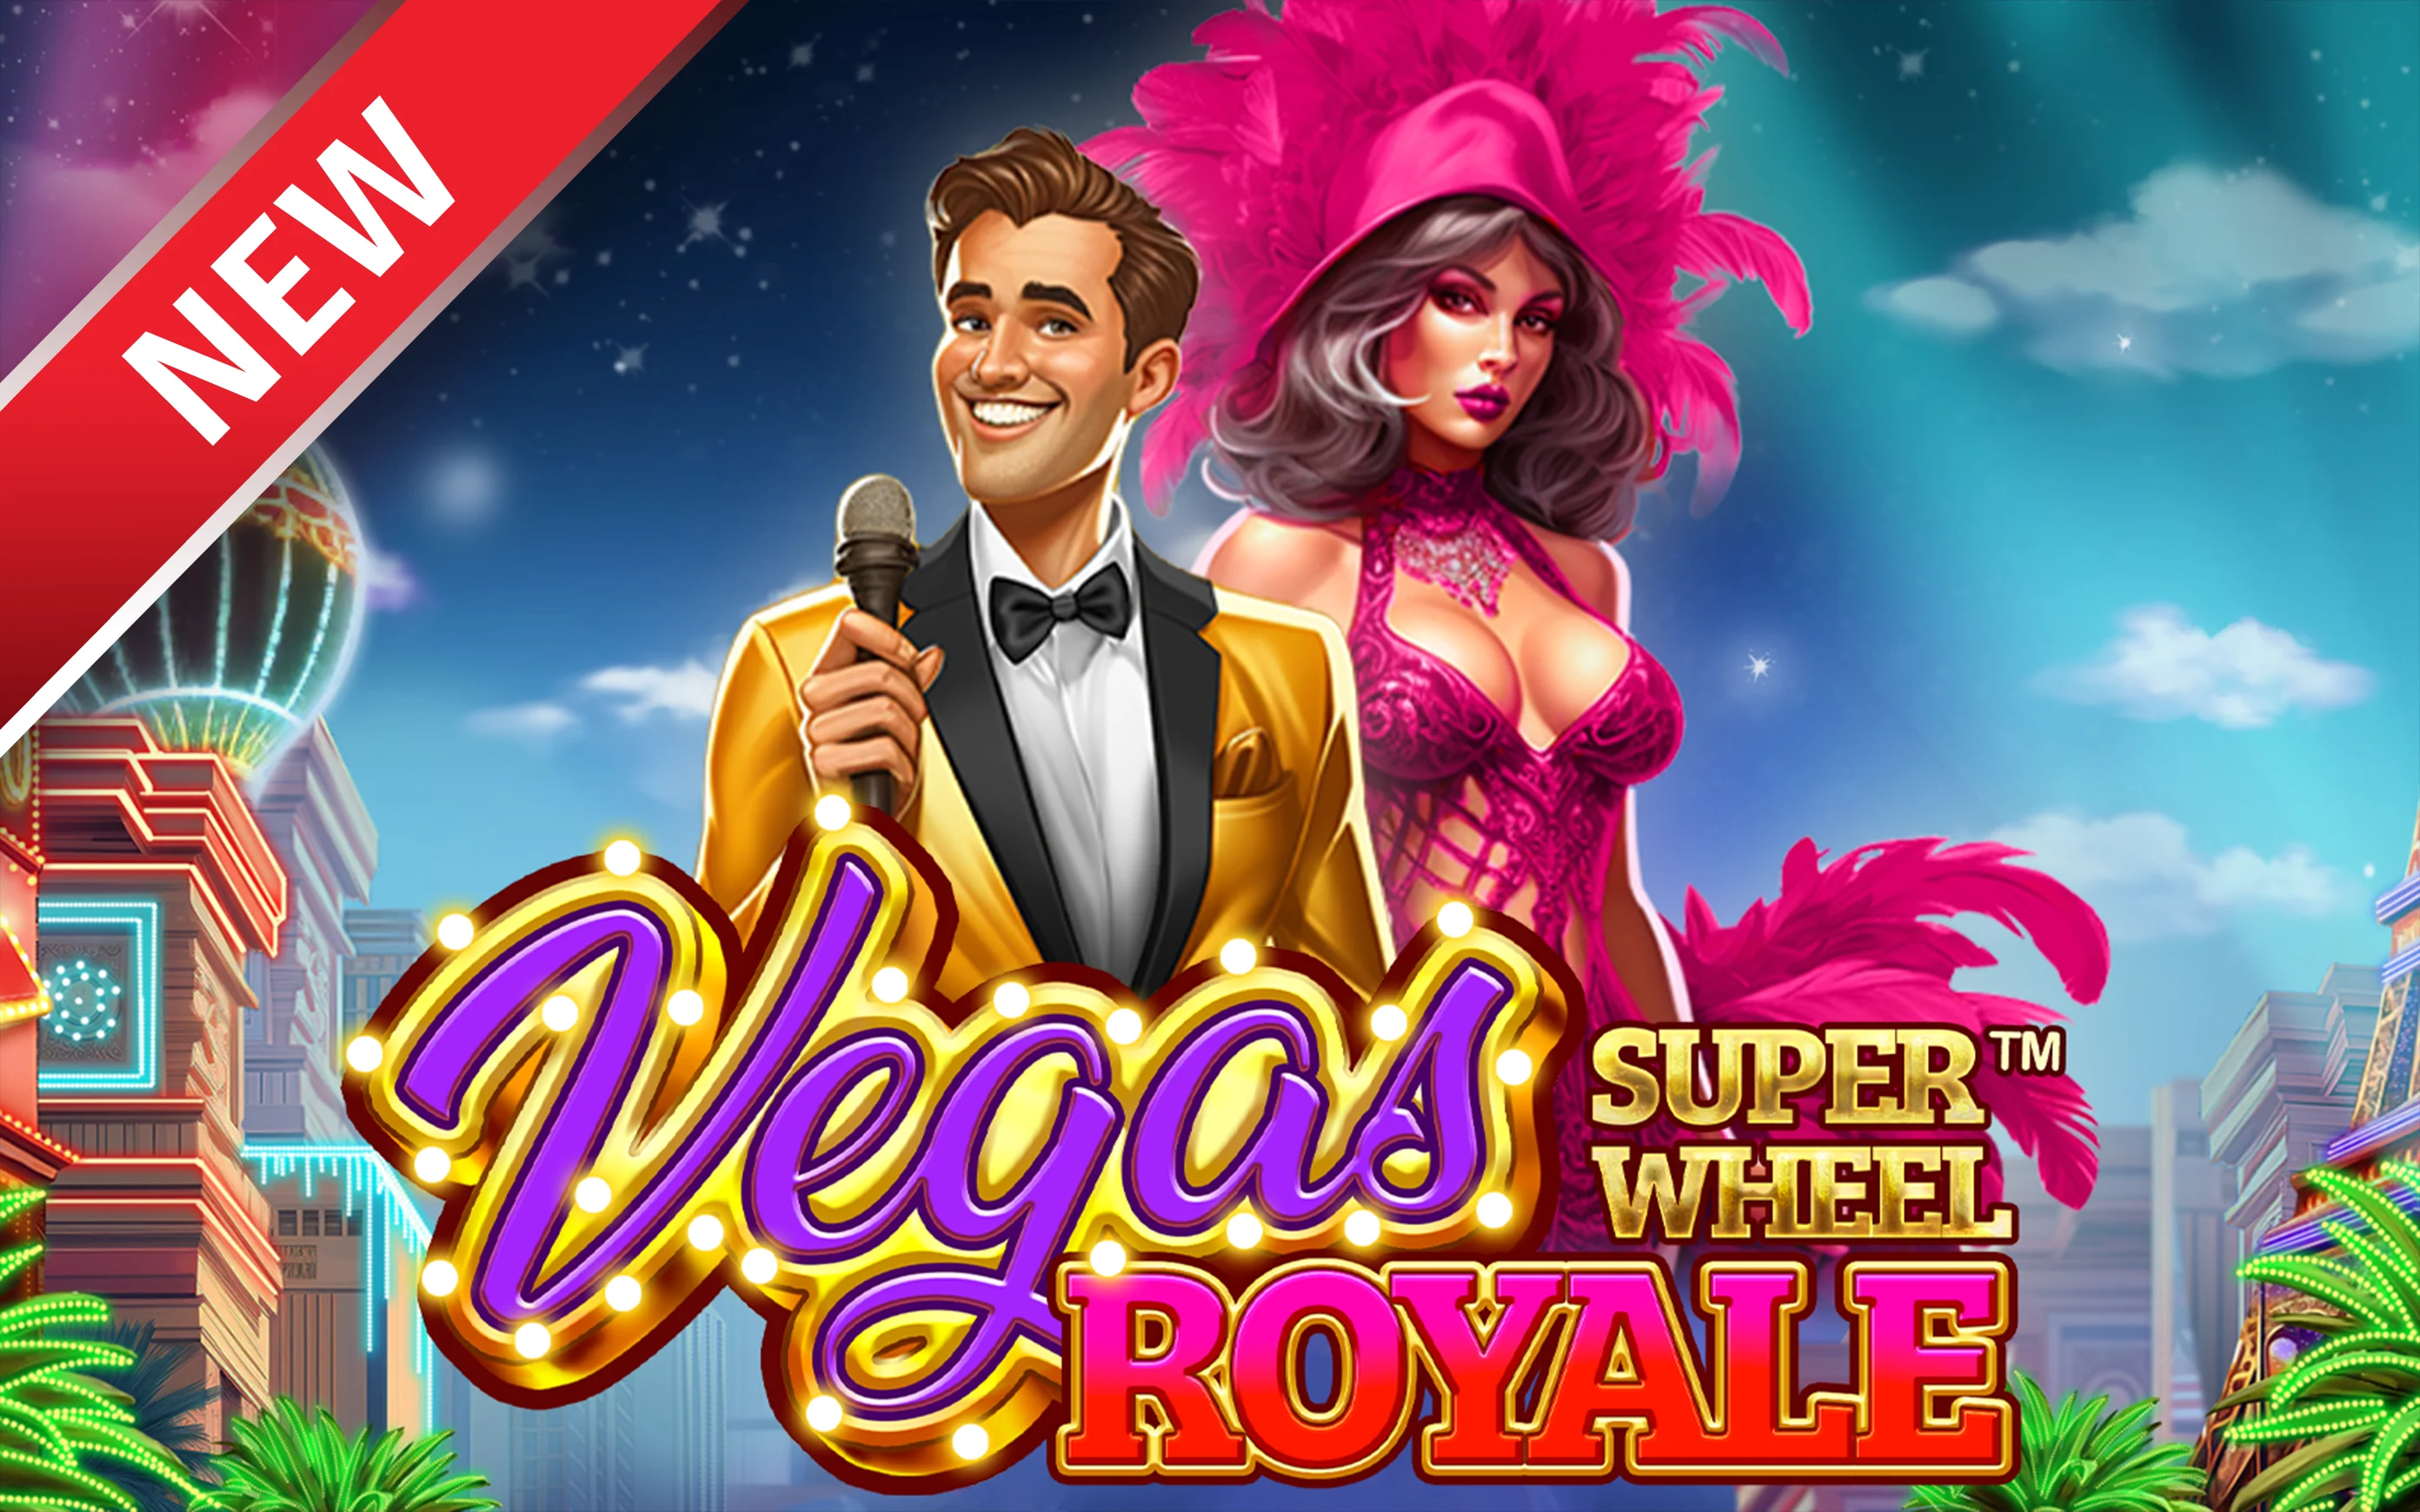 Играйте в Vegas Royale Super Wheel™ в онлайн-казино Starcasino.be